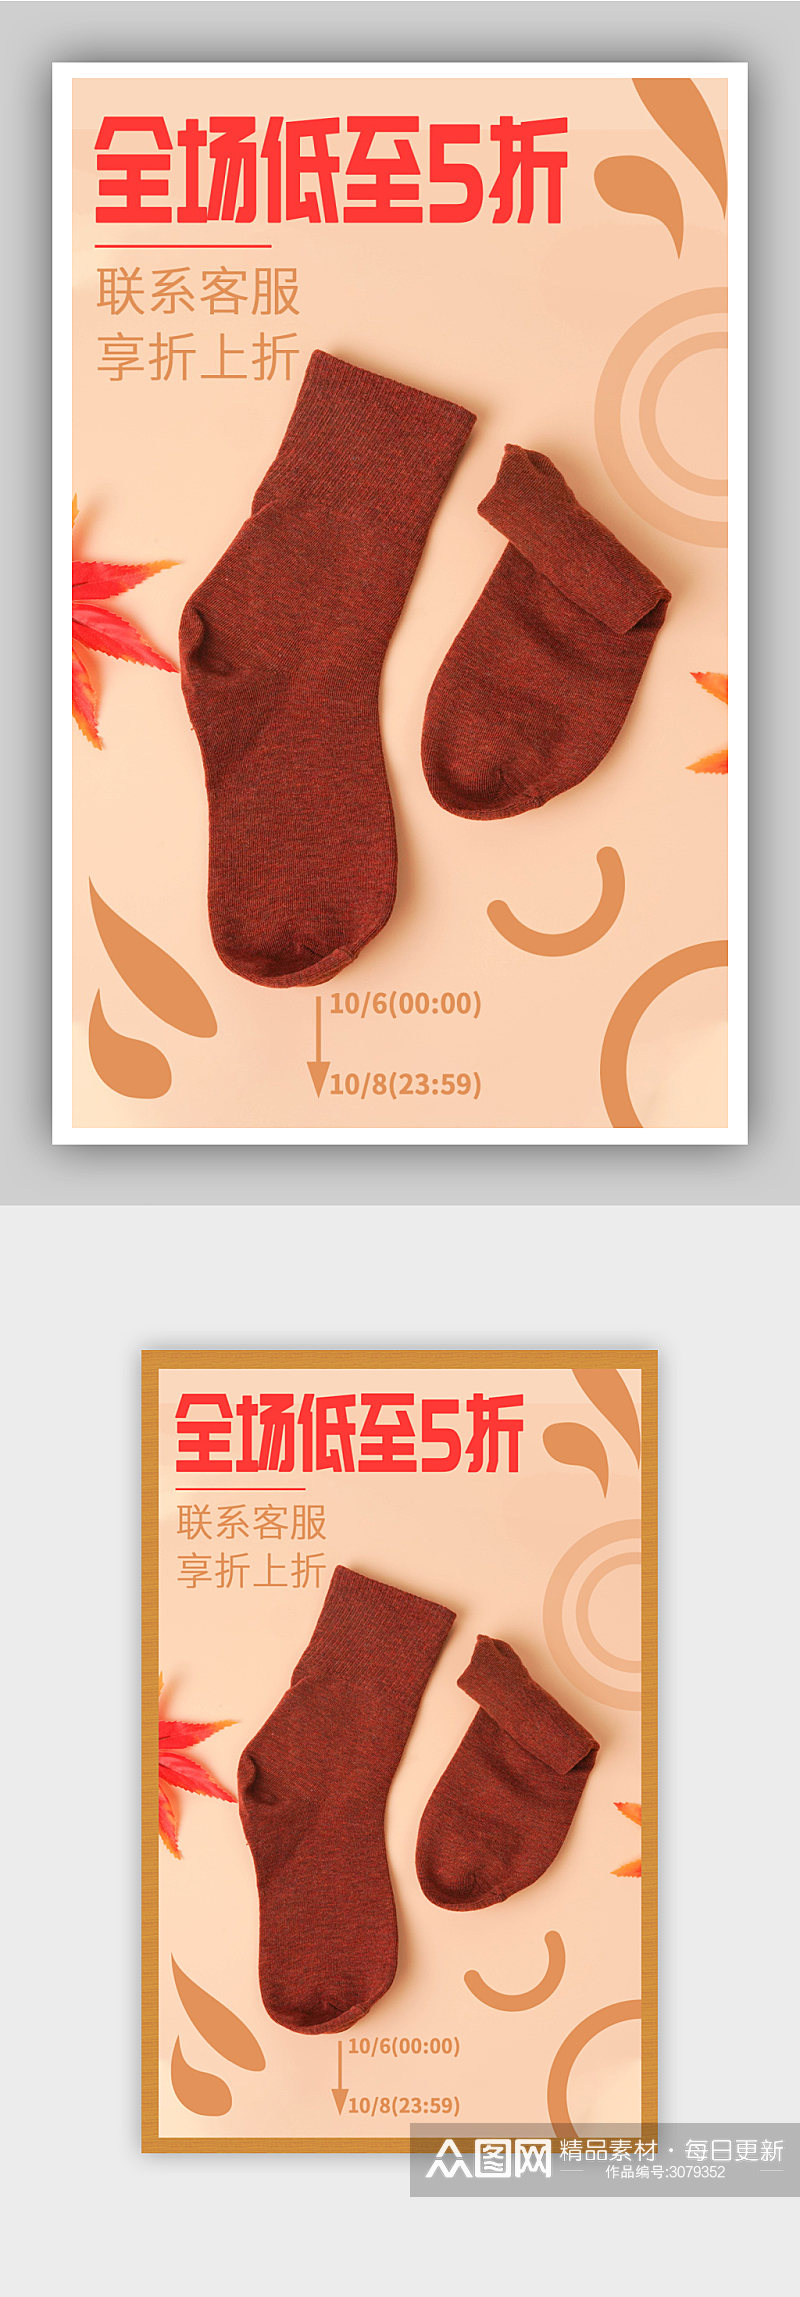 袜子服装橘红秋冬保暖促销活动海报素材